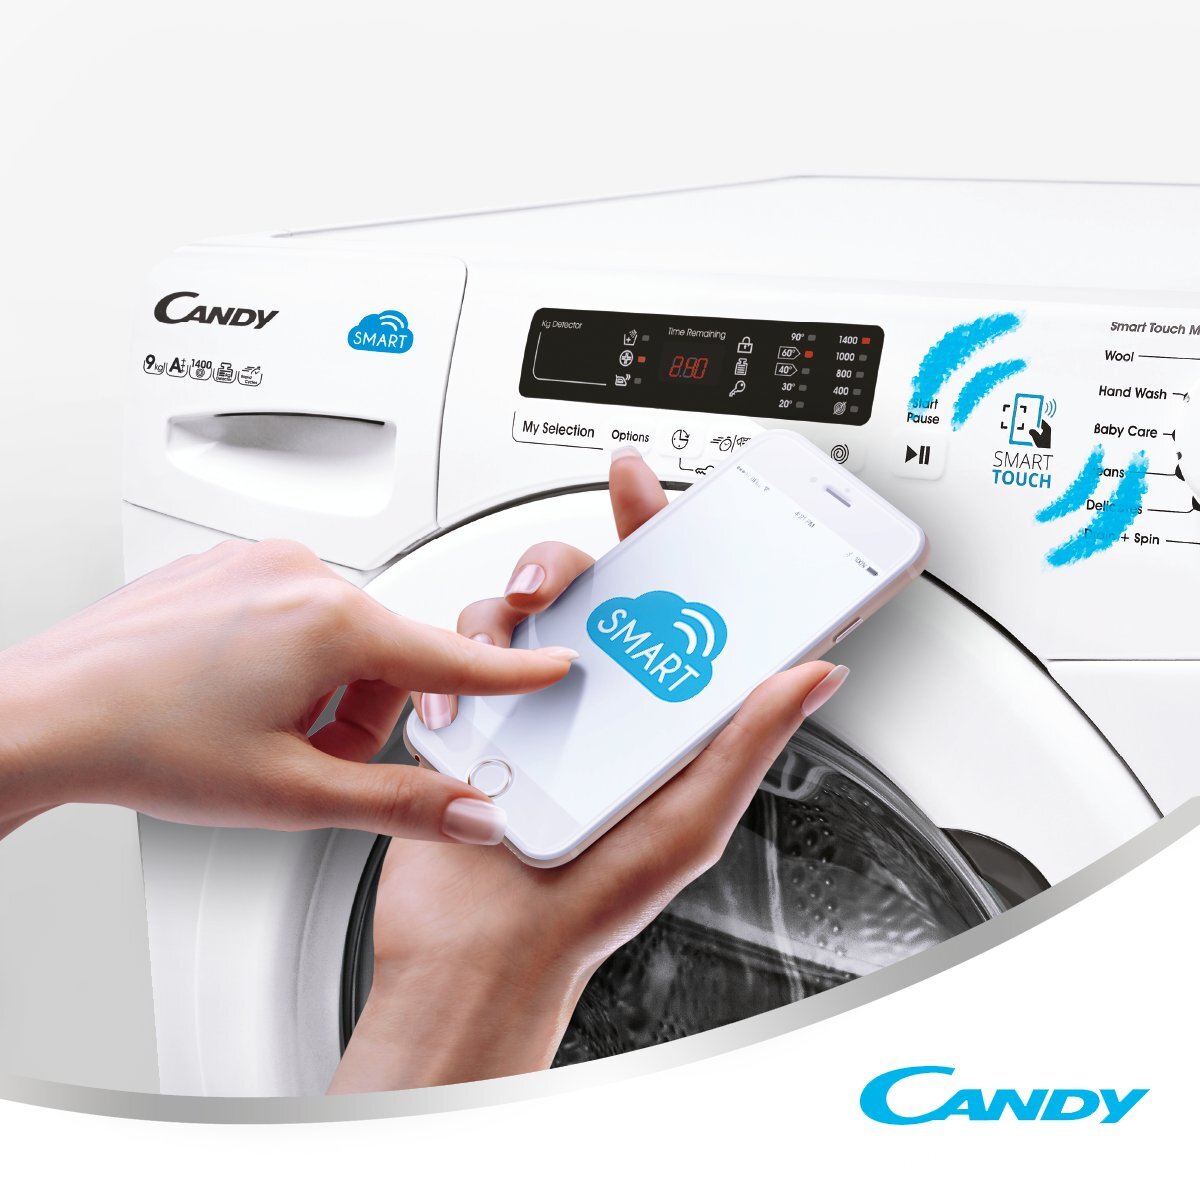 Bạn có thể điều khiển và kiểm soát hoạt động của máy rửa bát Candy qua chương trình Smart Touch